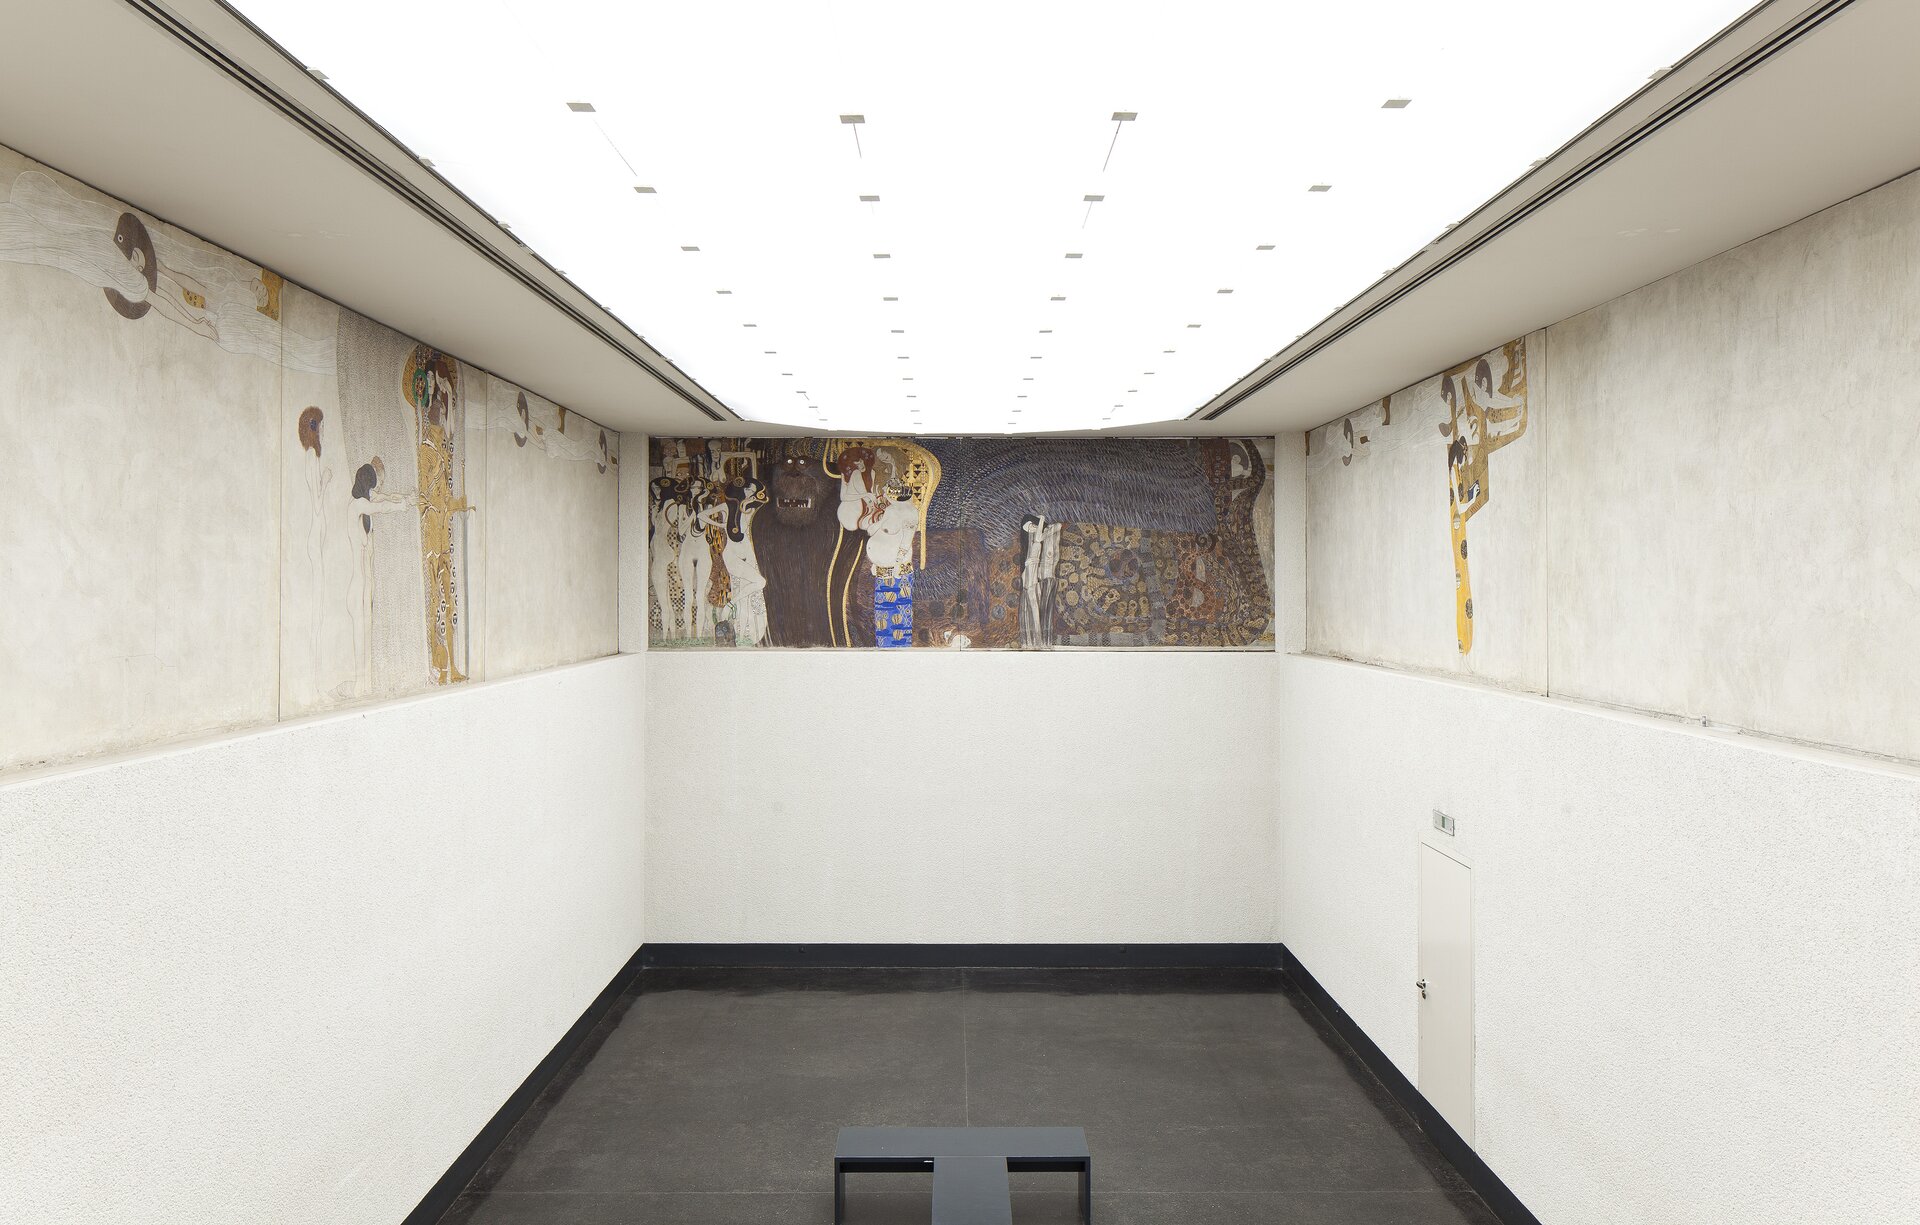 Ilustracja interaktywna o kształcie poziomego prostokąta przedstawia fresk „Fryz Beethovena”, znajdujący się w Pawilonie Secesji. Fresk ukazuje starożytne postacie stojące w różnych pozach. W kompozycji dominuje kolor biały. 